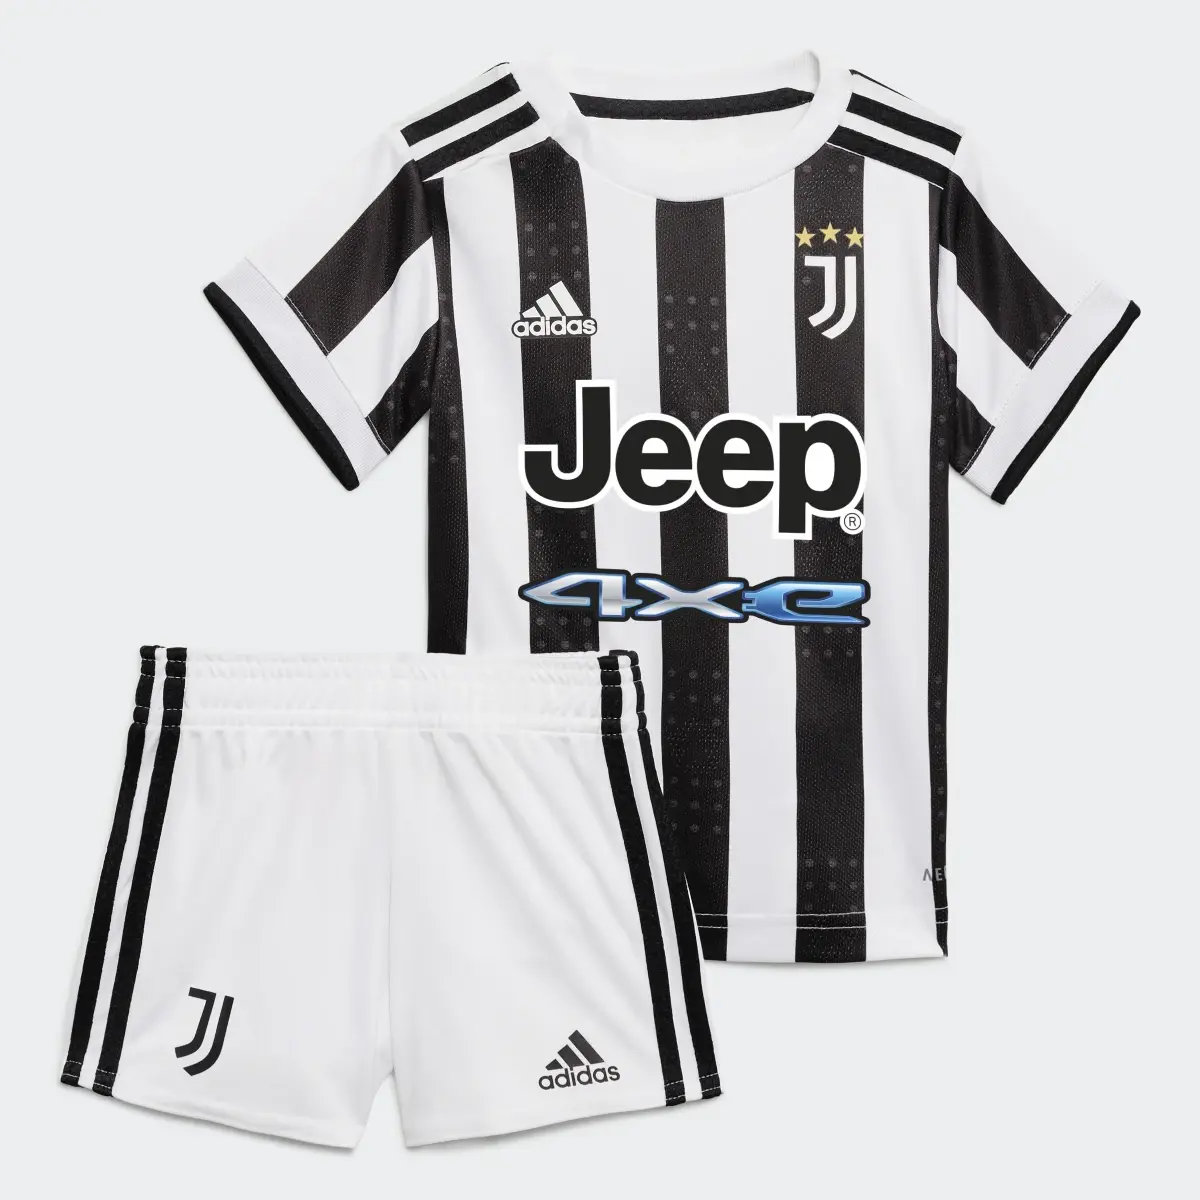 Adidas Juventus 21/22 Home Baby Kit. 2